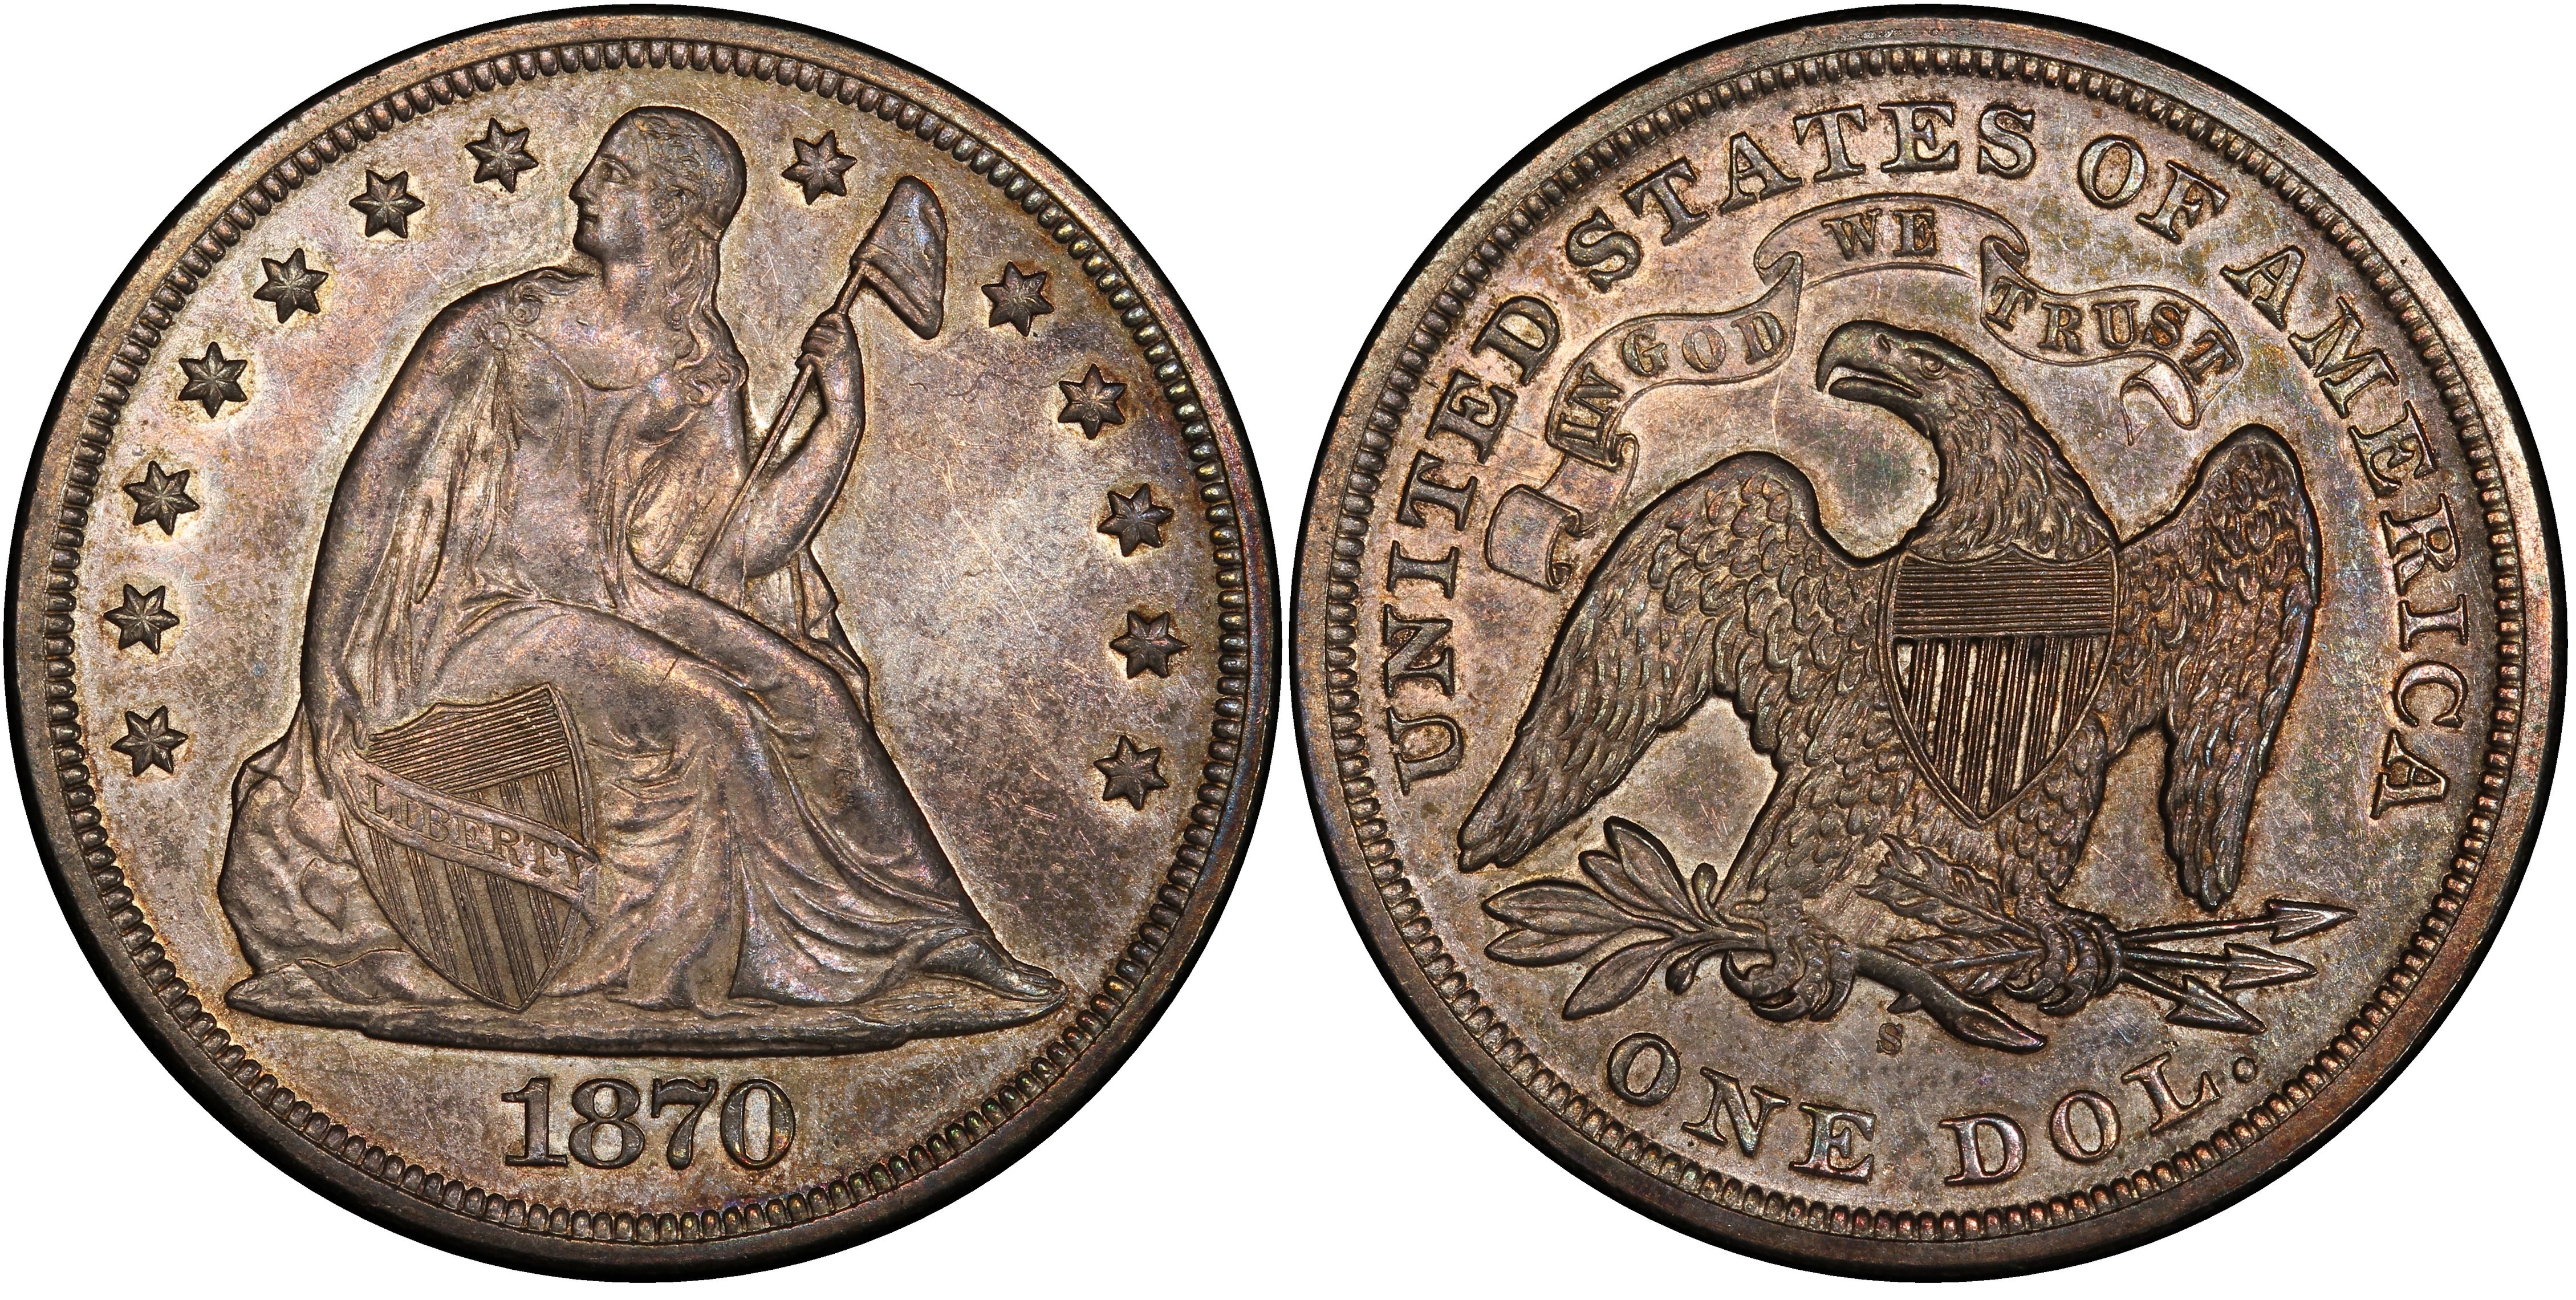 Rare U.S. Coins